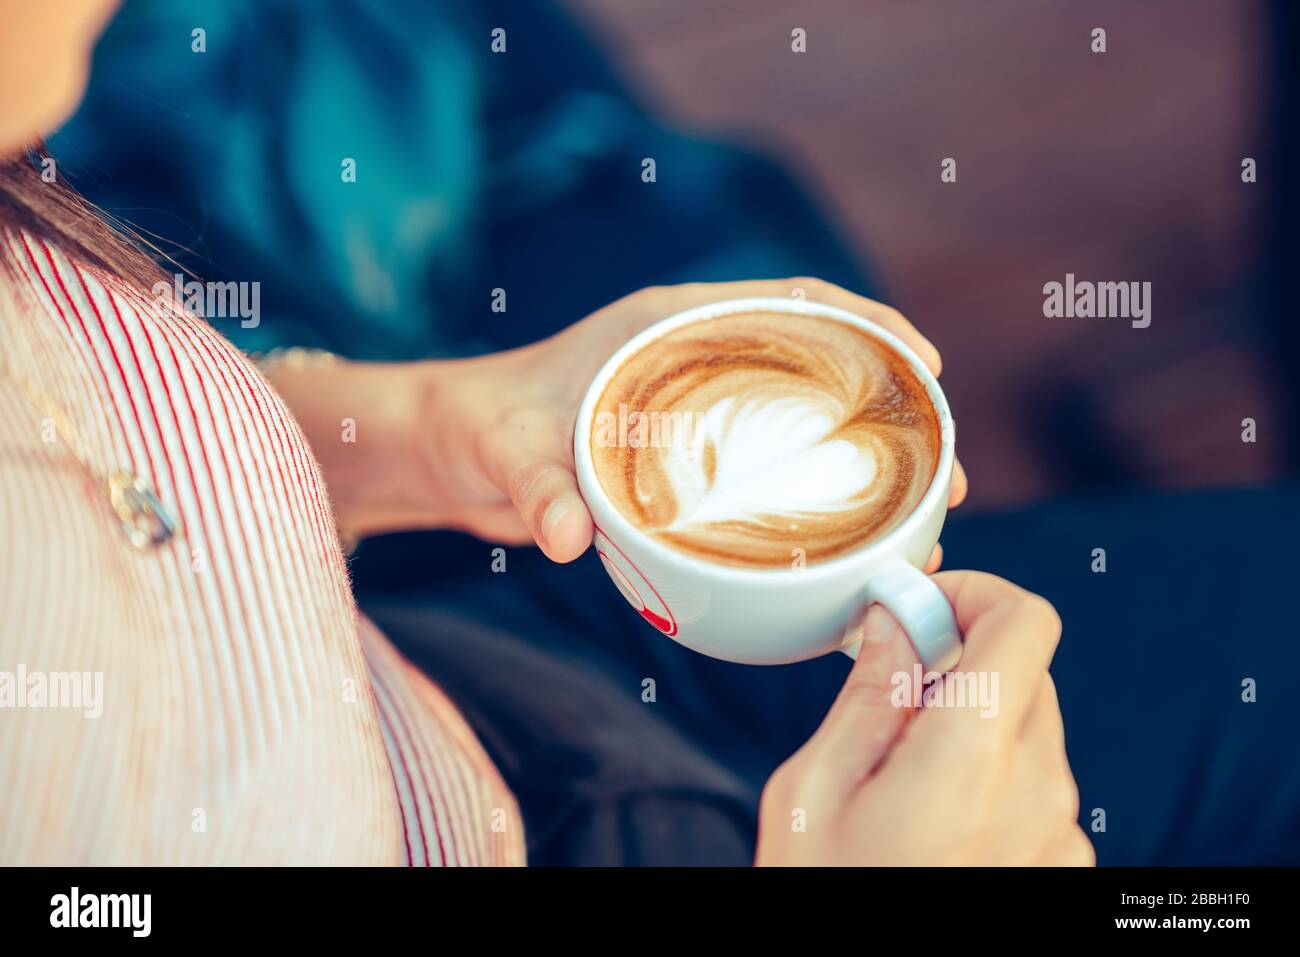 Jeune femme assise et tenant une tasse avec du café en forme de coeur dans un café Banque D'Images